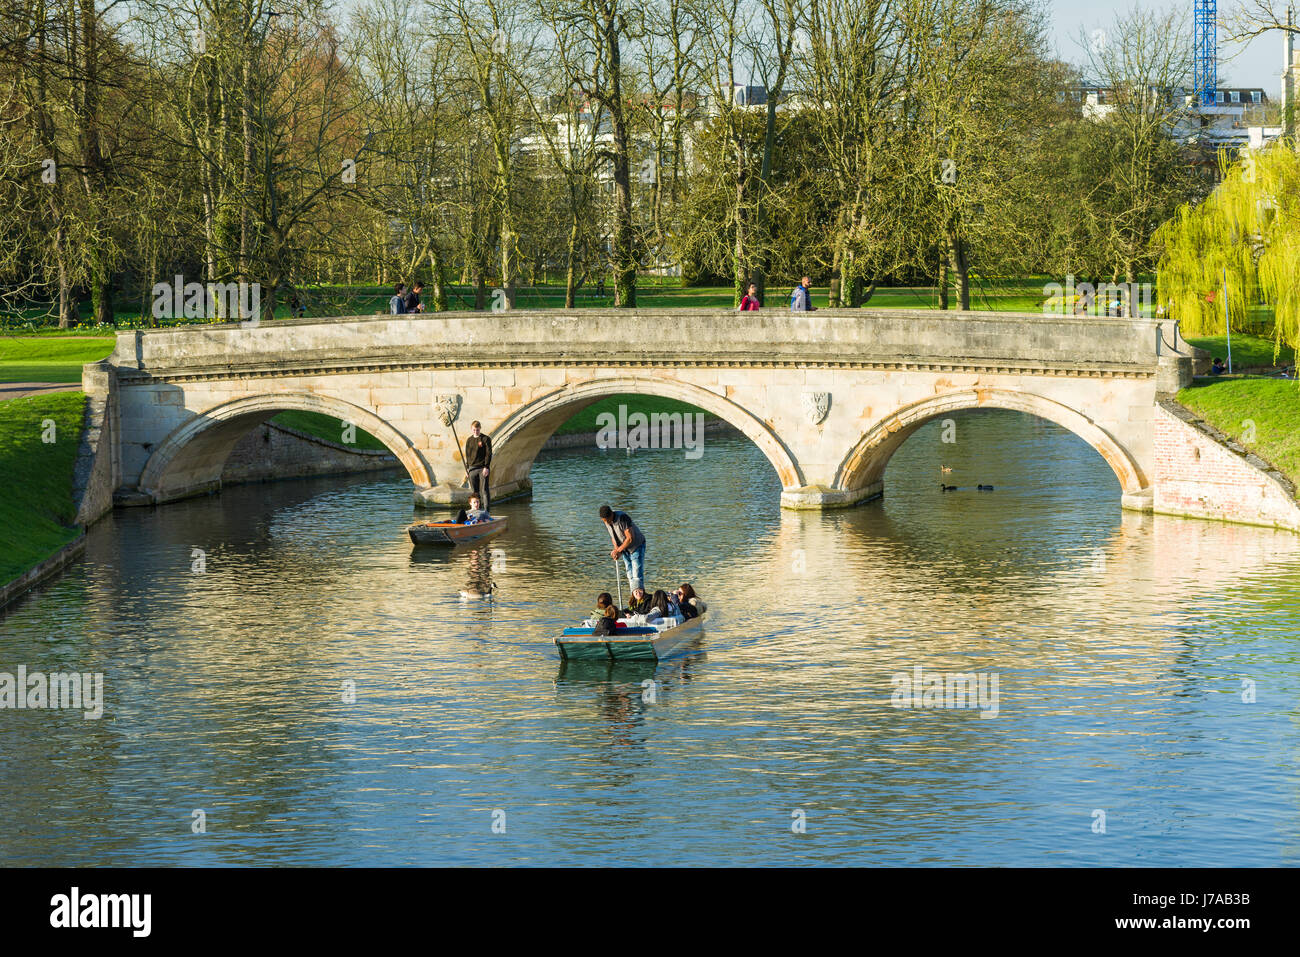 Les touristes sur Punt bateaux avec pont de pierre sur la rivière Cam sur une journée de printemps ensoleillée, Cambridge, Royaume-Uni Banque D'Images